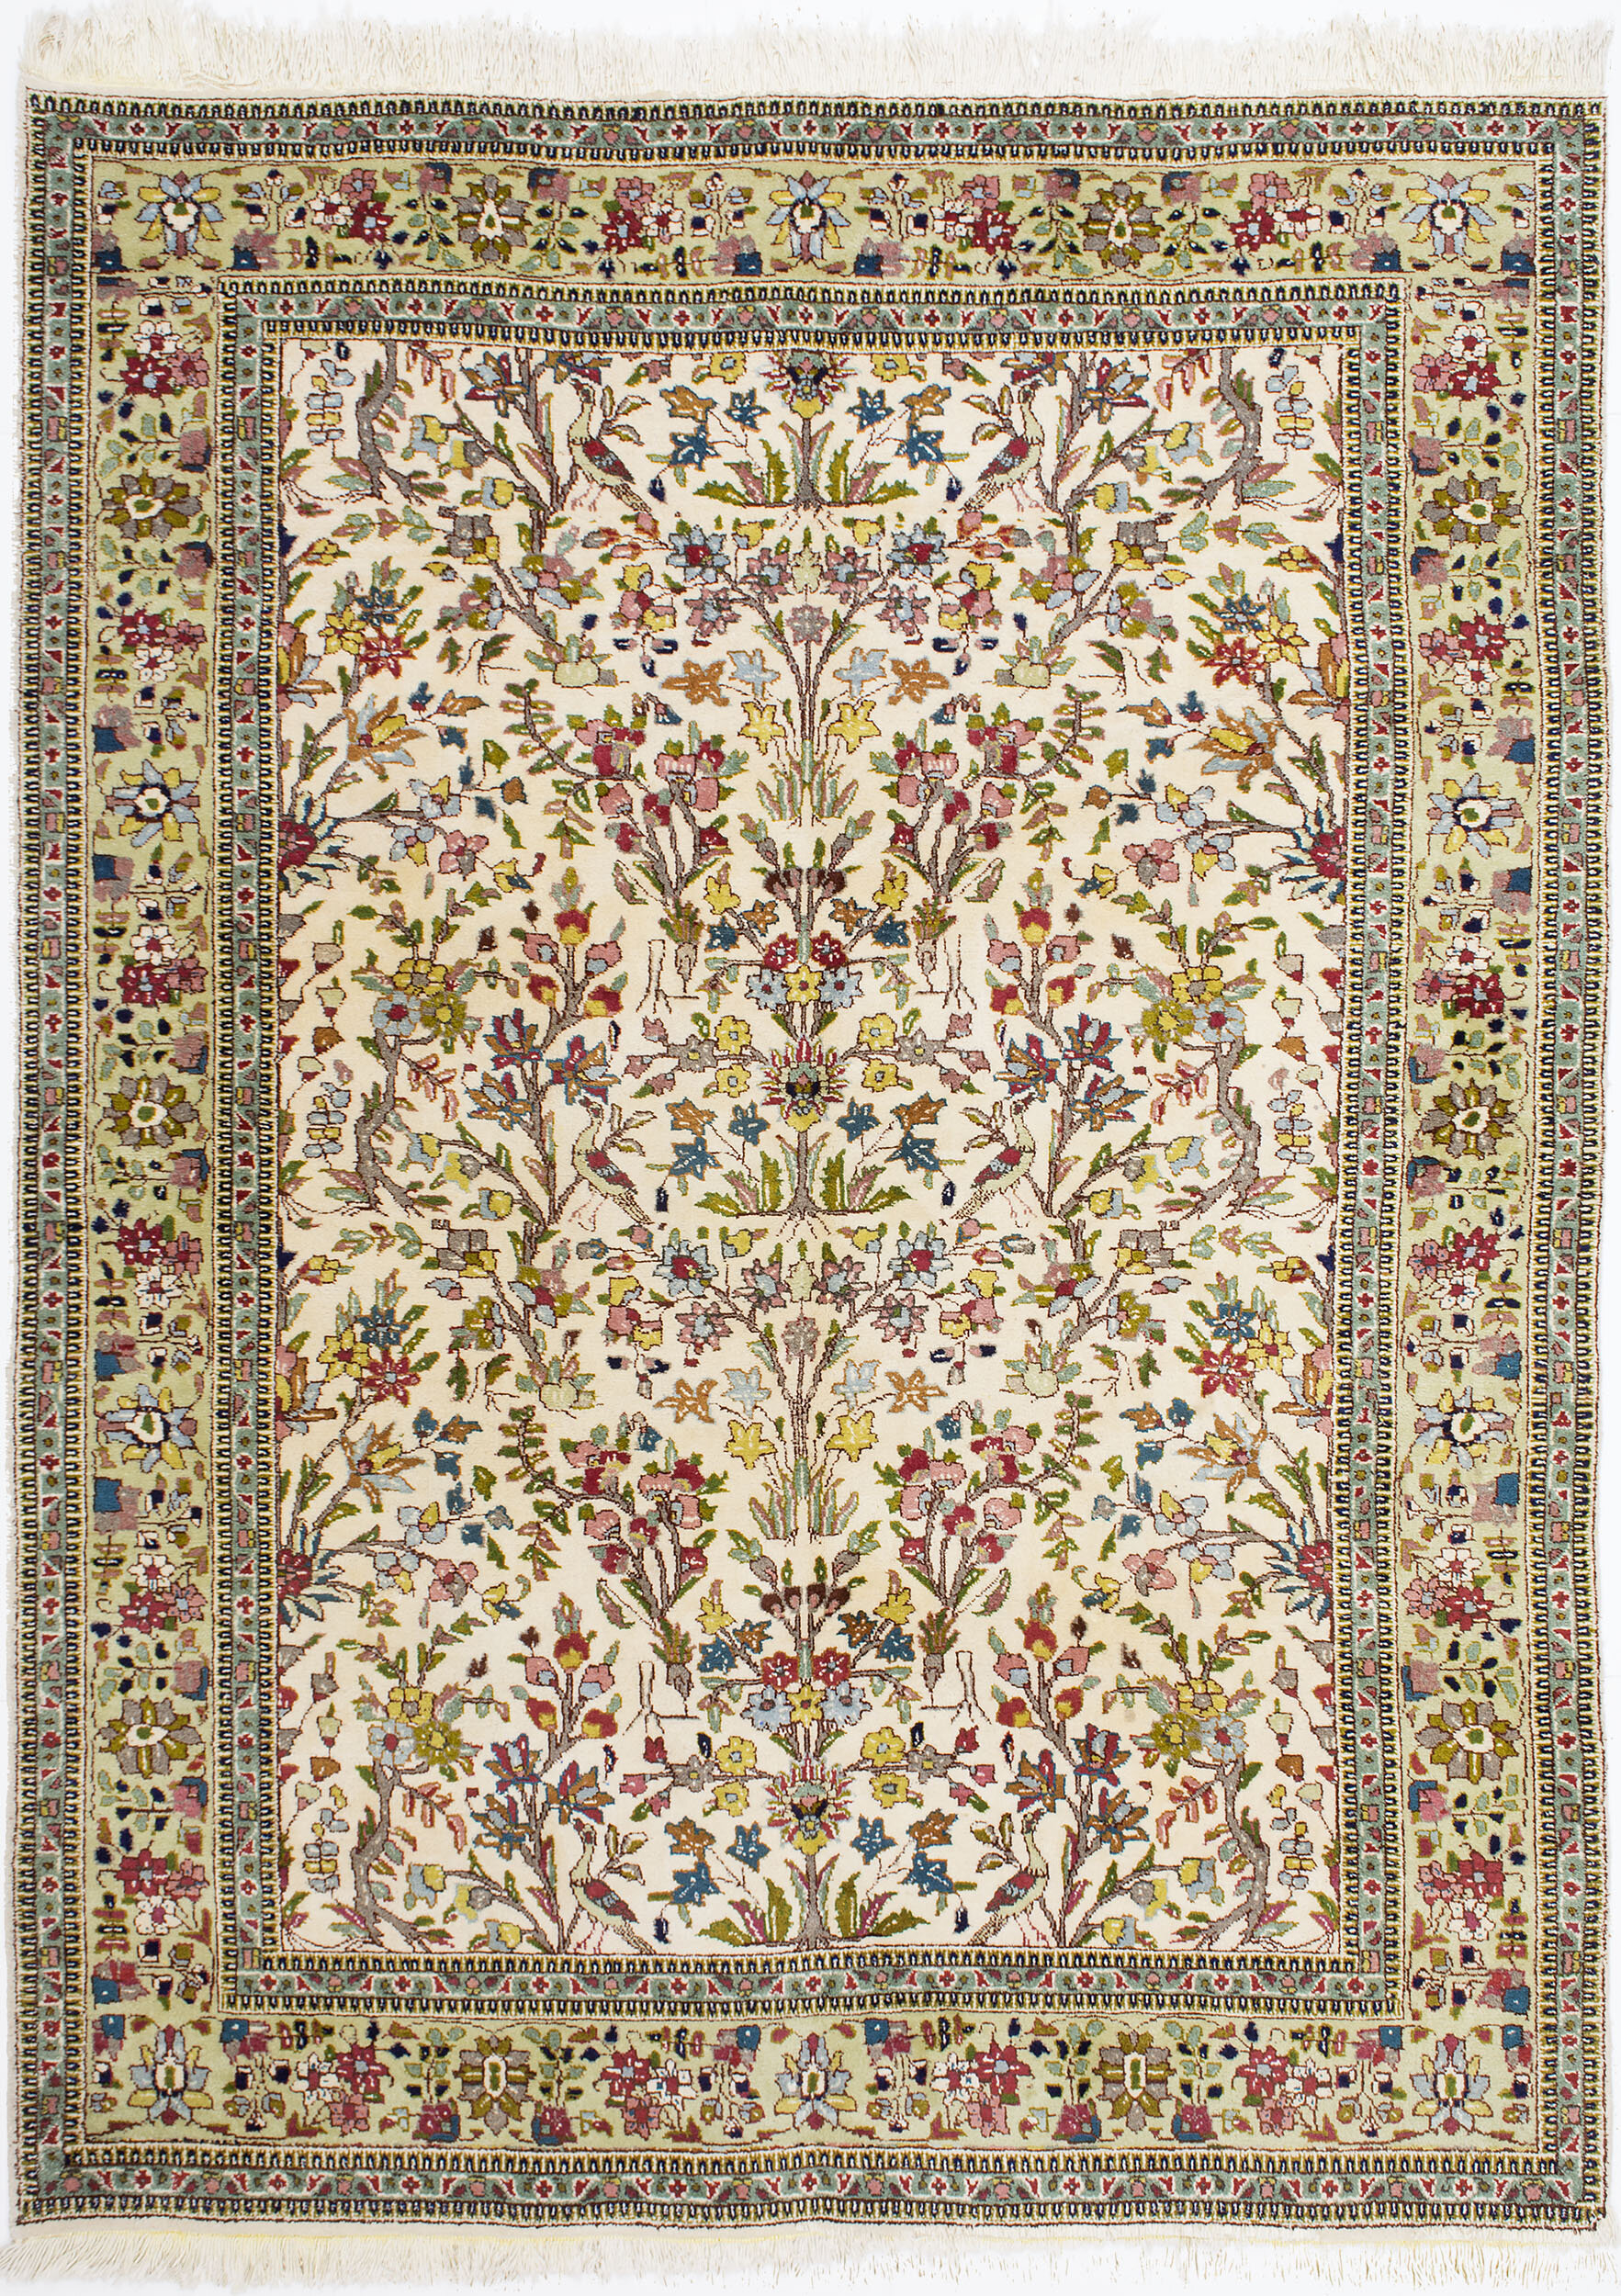 Taba Tabriz Carpet 8' 5" x 6' 4" 